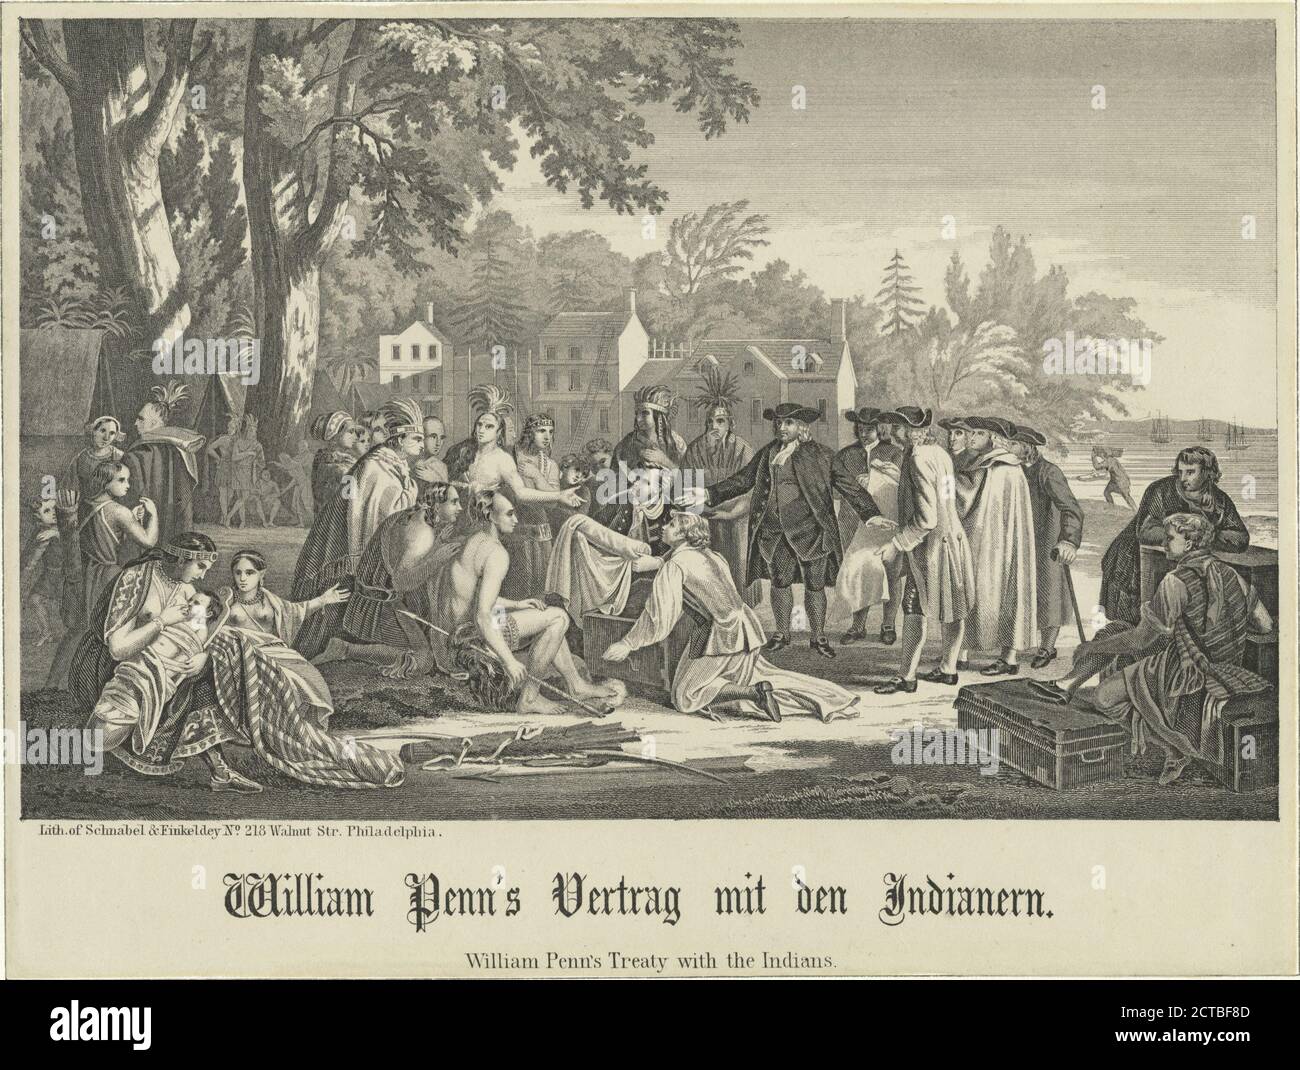 William Penn's Vertrag mit den Indianern., still image, Prints, 1777 - 1890, Schnabel & Finkeldey Stock Photo